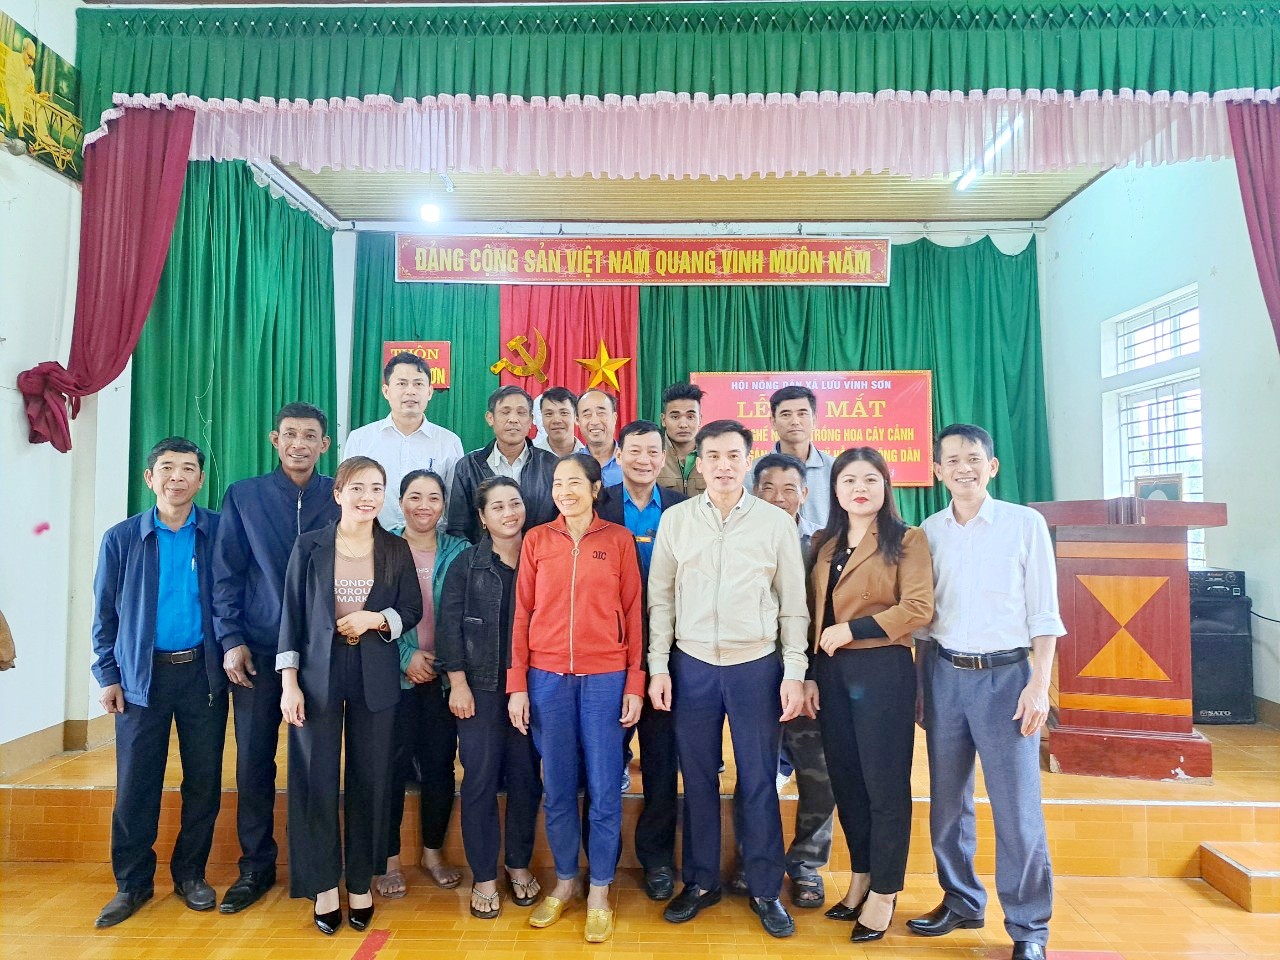 Ra mắt Tổ hội nghề nghiệp Trồng hoa cây cảnh tại Hội Nông dân xã Lưu Vĩnh Sơn, huyện Thạch Hà